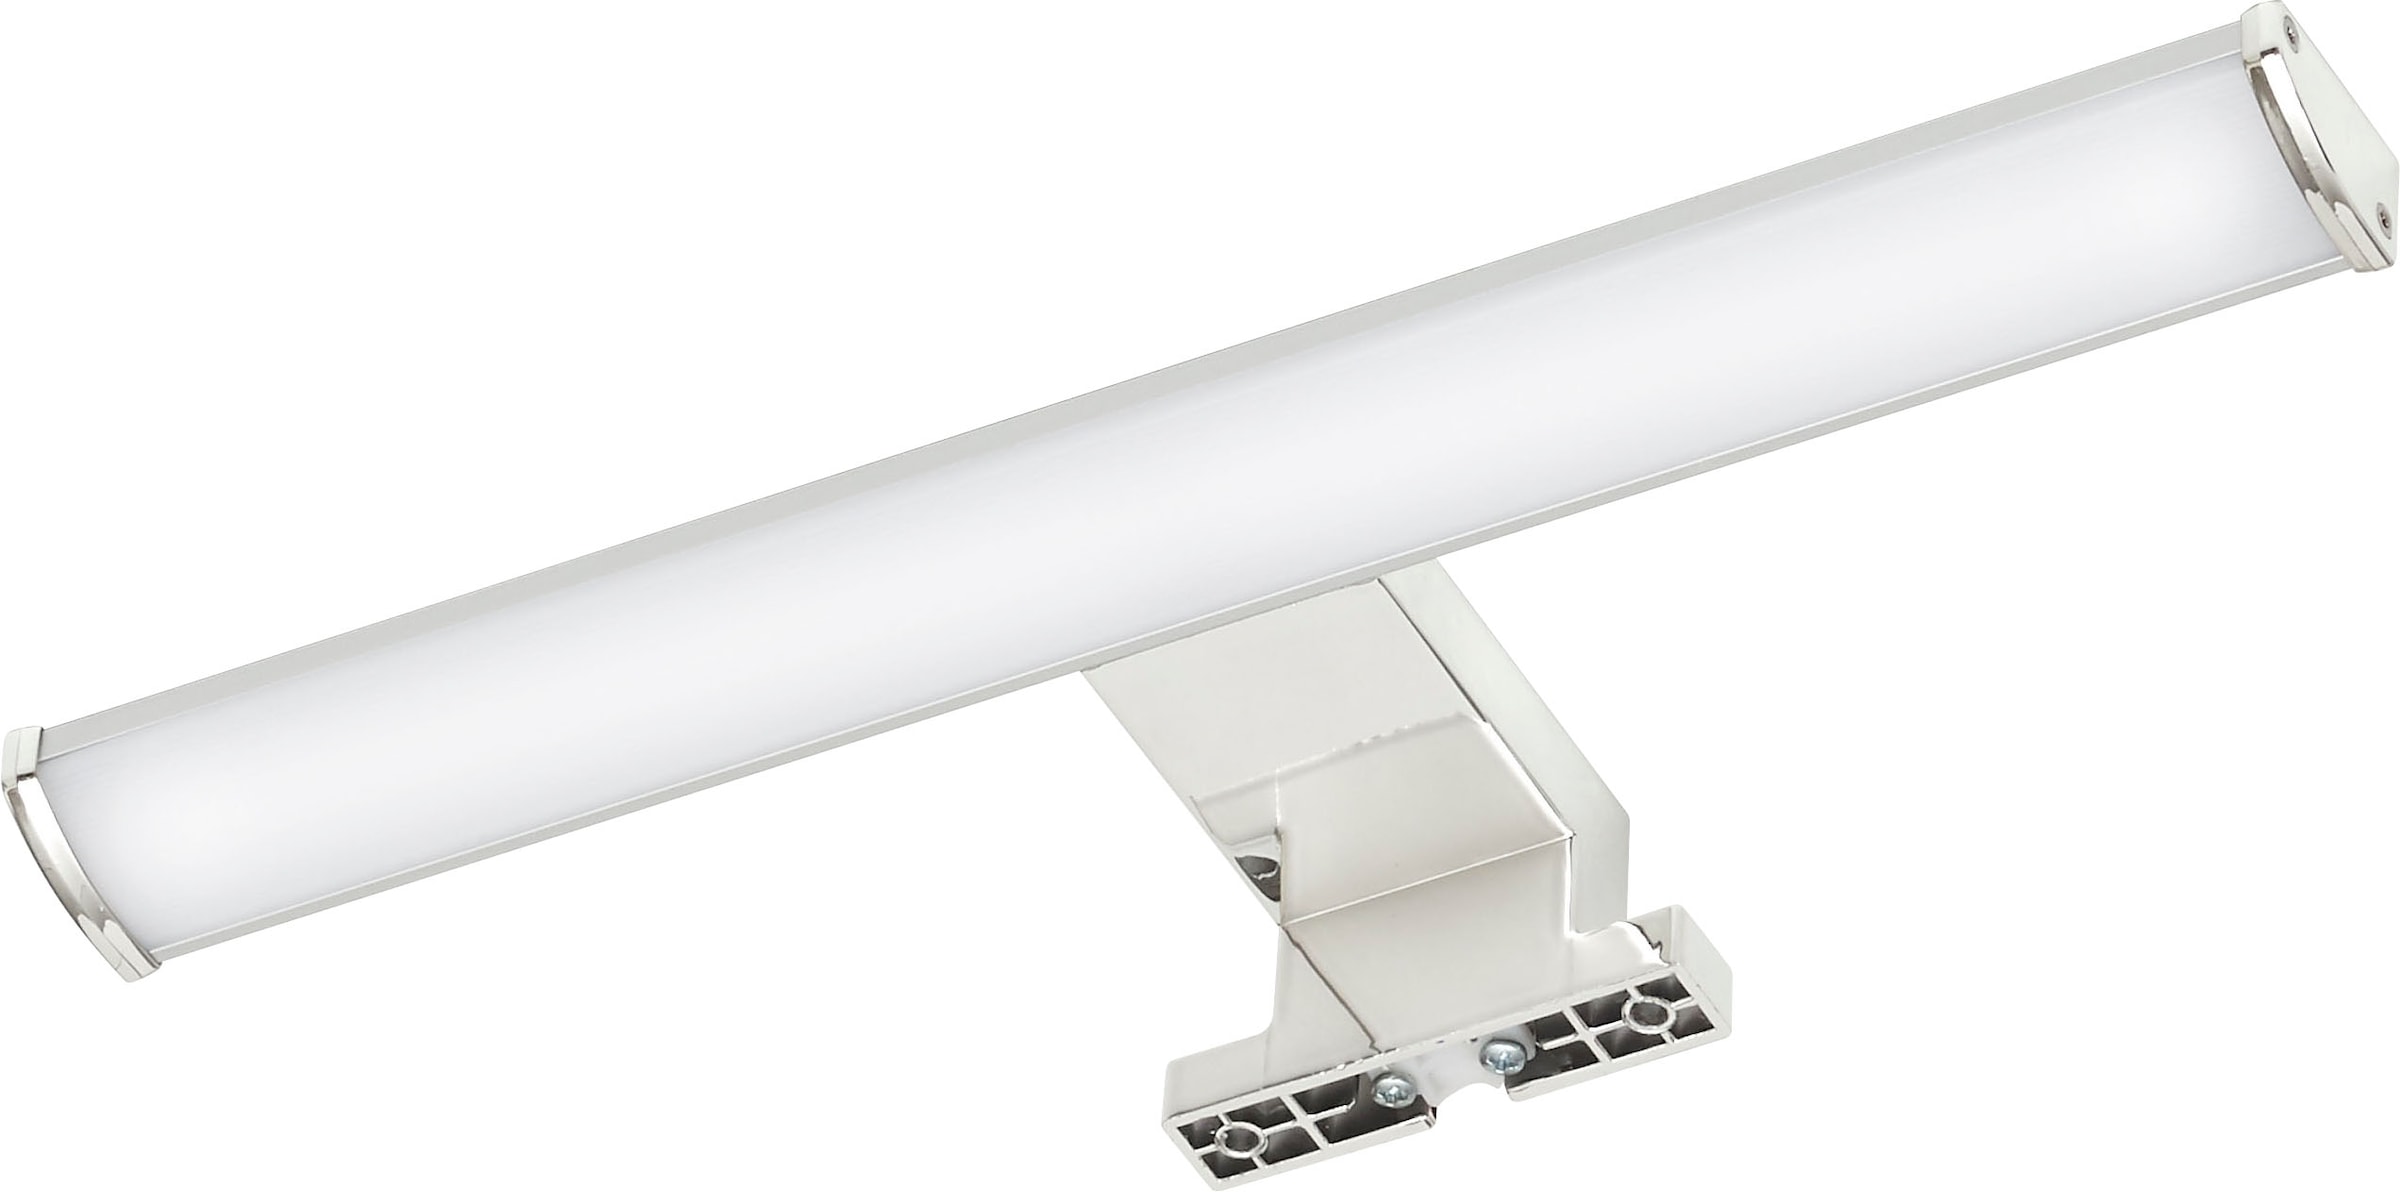 Saphir Aufbauleuchte »Quickset LED-Aufsatzleuchte für Spiegel o. Spiegelschrank«, Badlampe 30 cm breit, Silber, Aluminium, 230V, 6W, kaltweiß